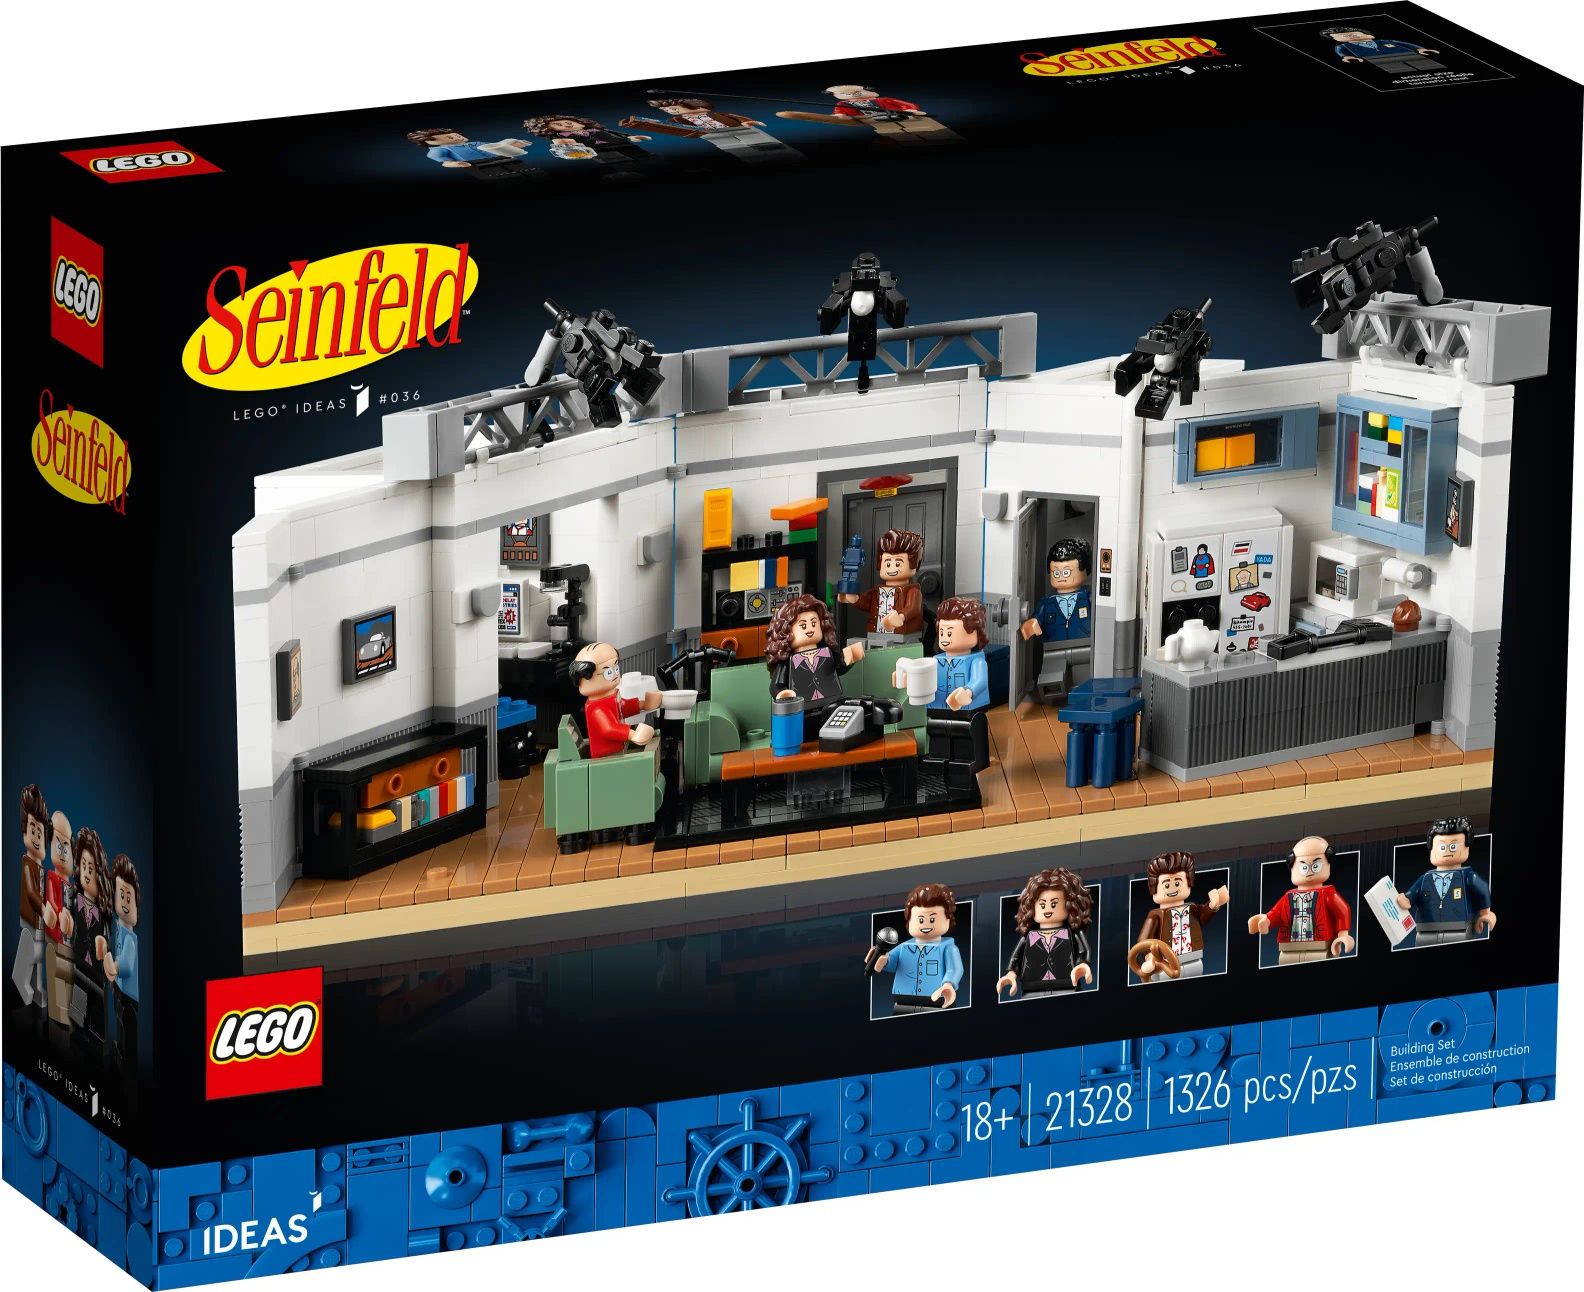 Klocki Lego 21328 Seinfeld nowe szybka wysyłka od ręki